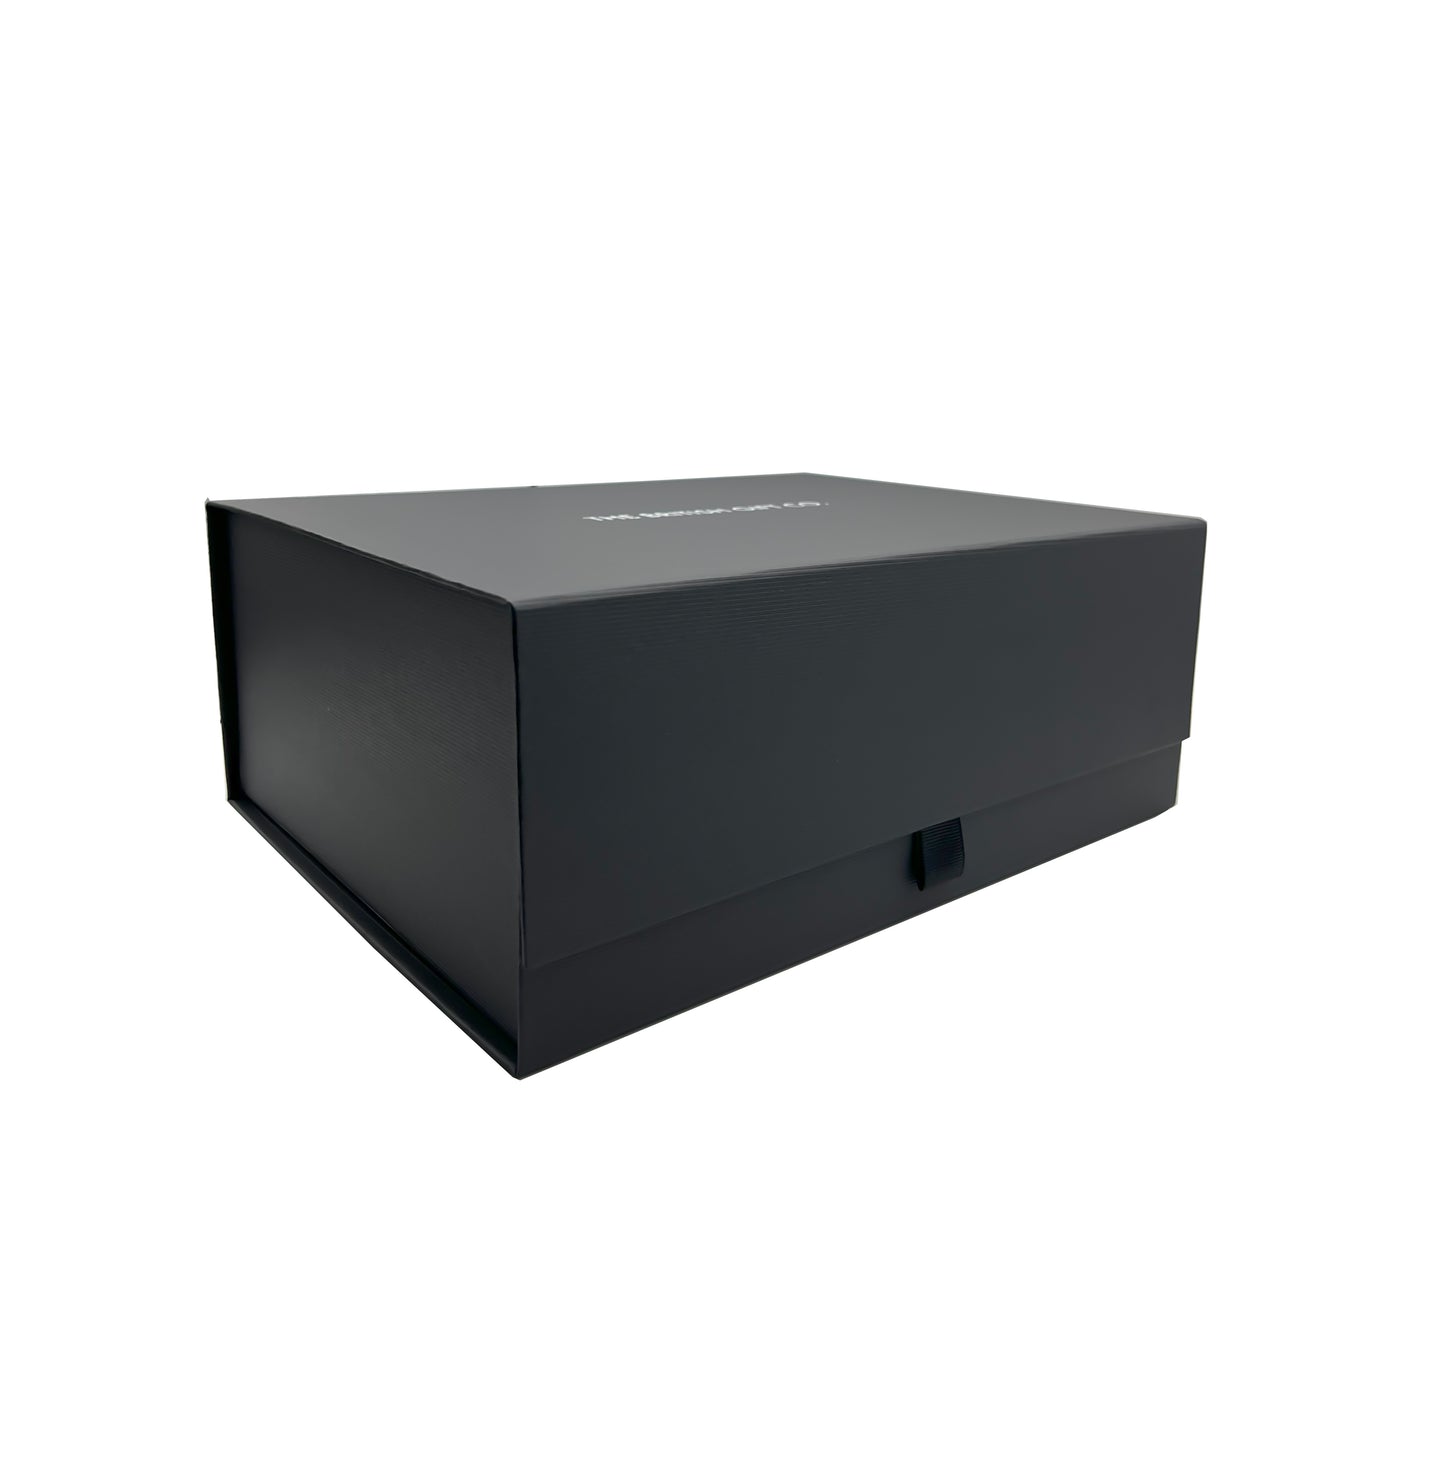 Luxury Black Magnetic Box 280 x 220x110 mm Deep snapshut box Ribbon Tab Comes with Shredded Paper.